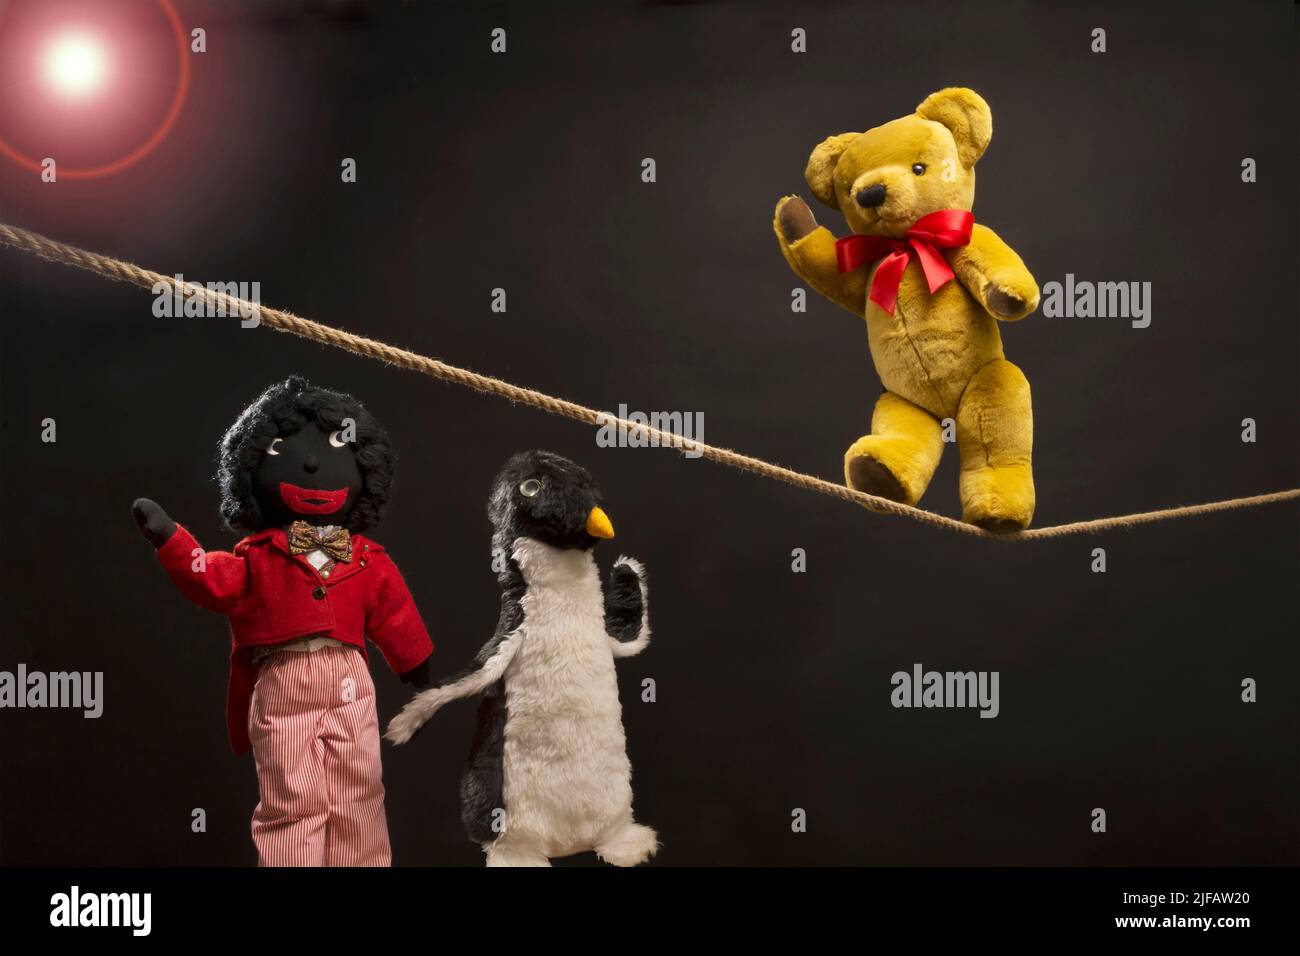 Trois jouets souples ayant du plaisir, avec un ours en peluche marchant une corde serrée Banque D'Images